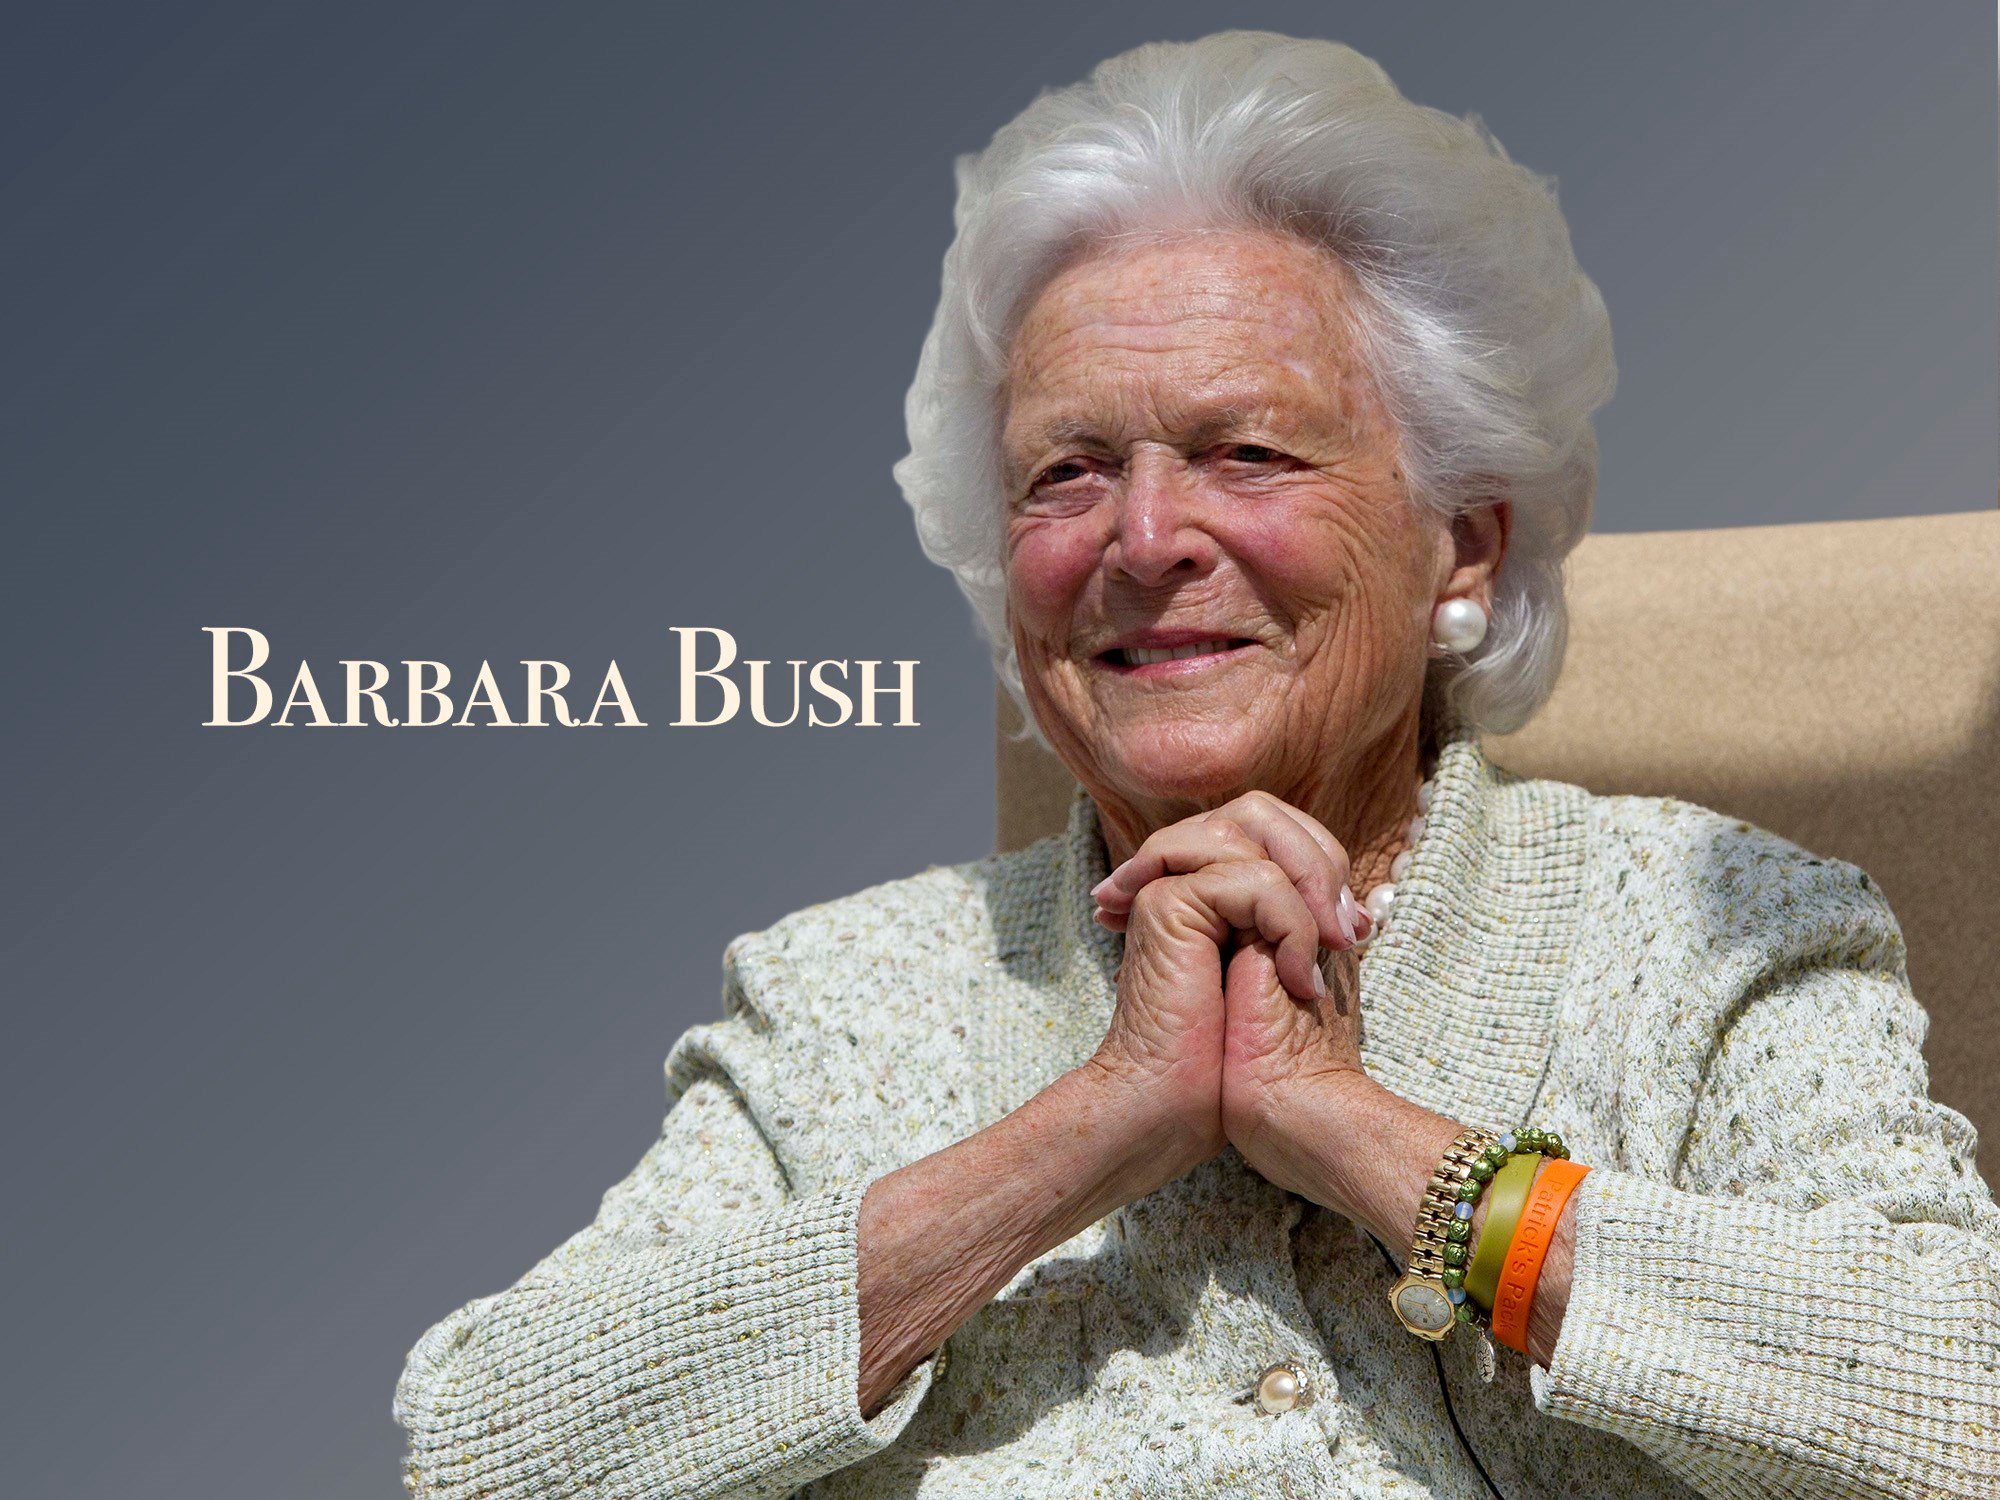 HOUSTON (AP) - Former first lady Barbara Bush has died. 